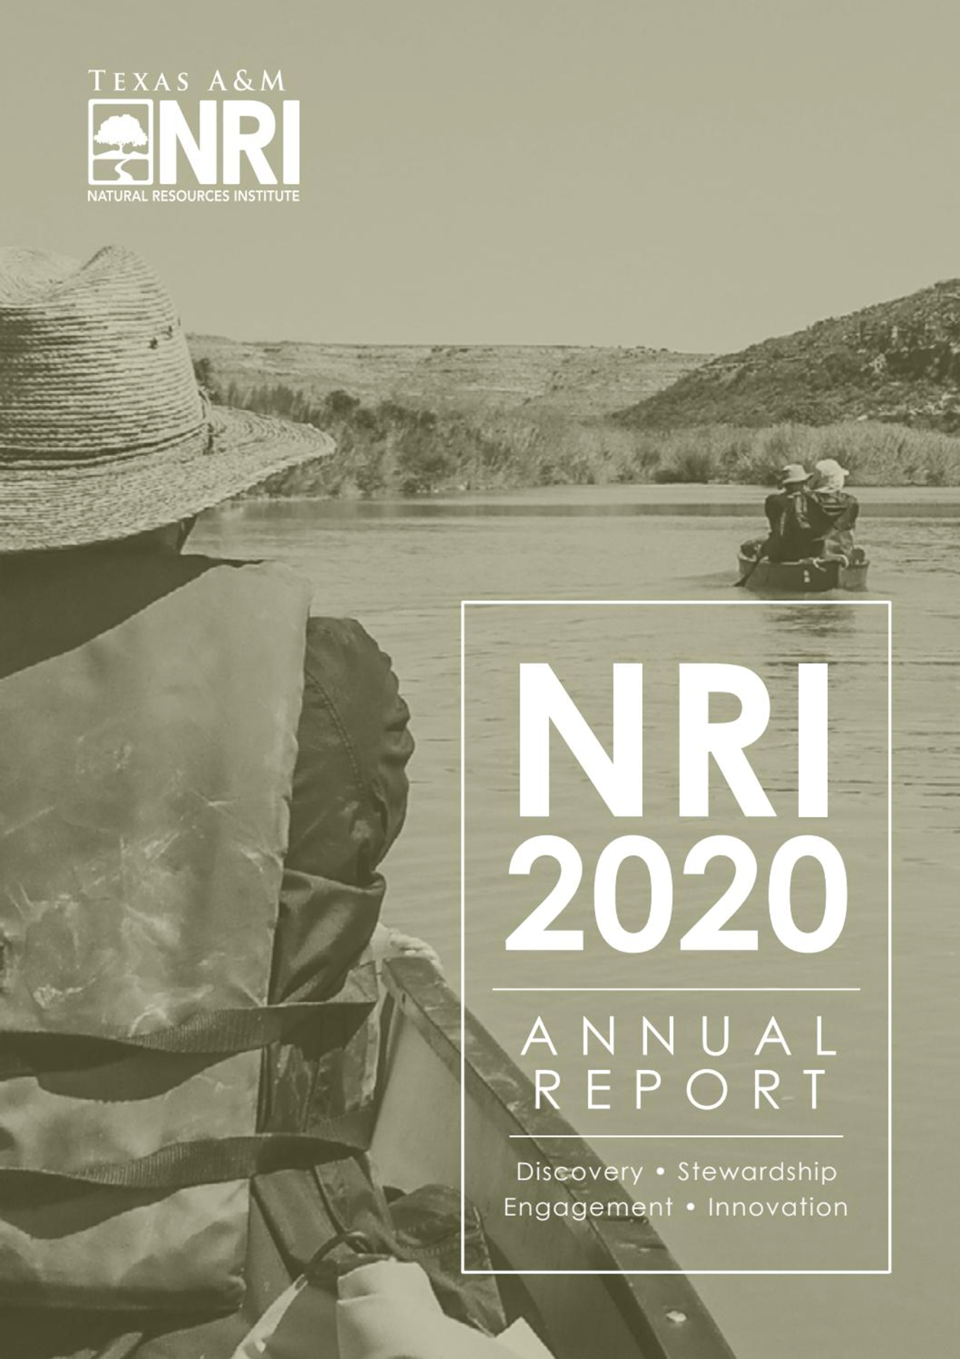 NRI 2020 Annual Report